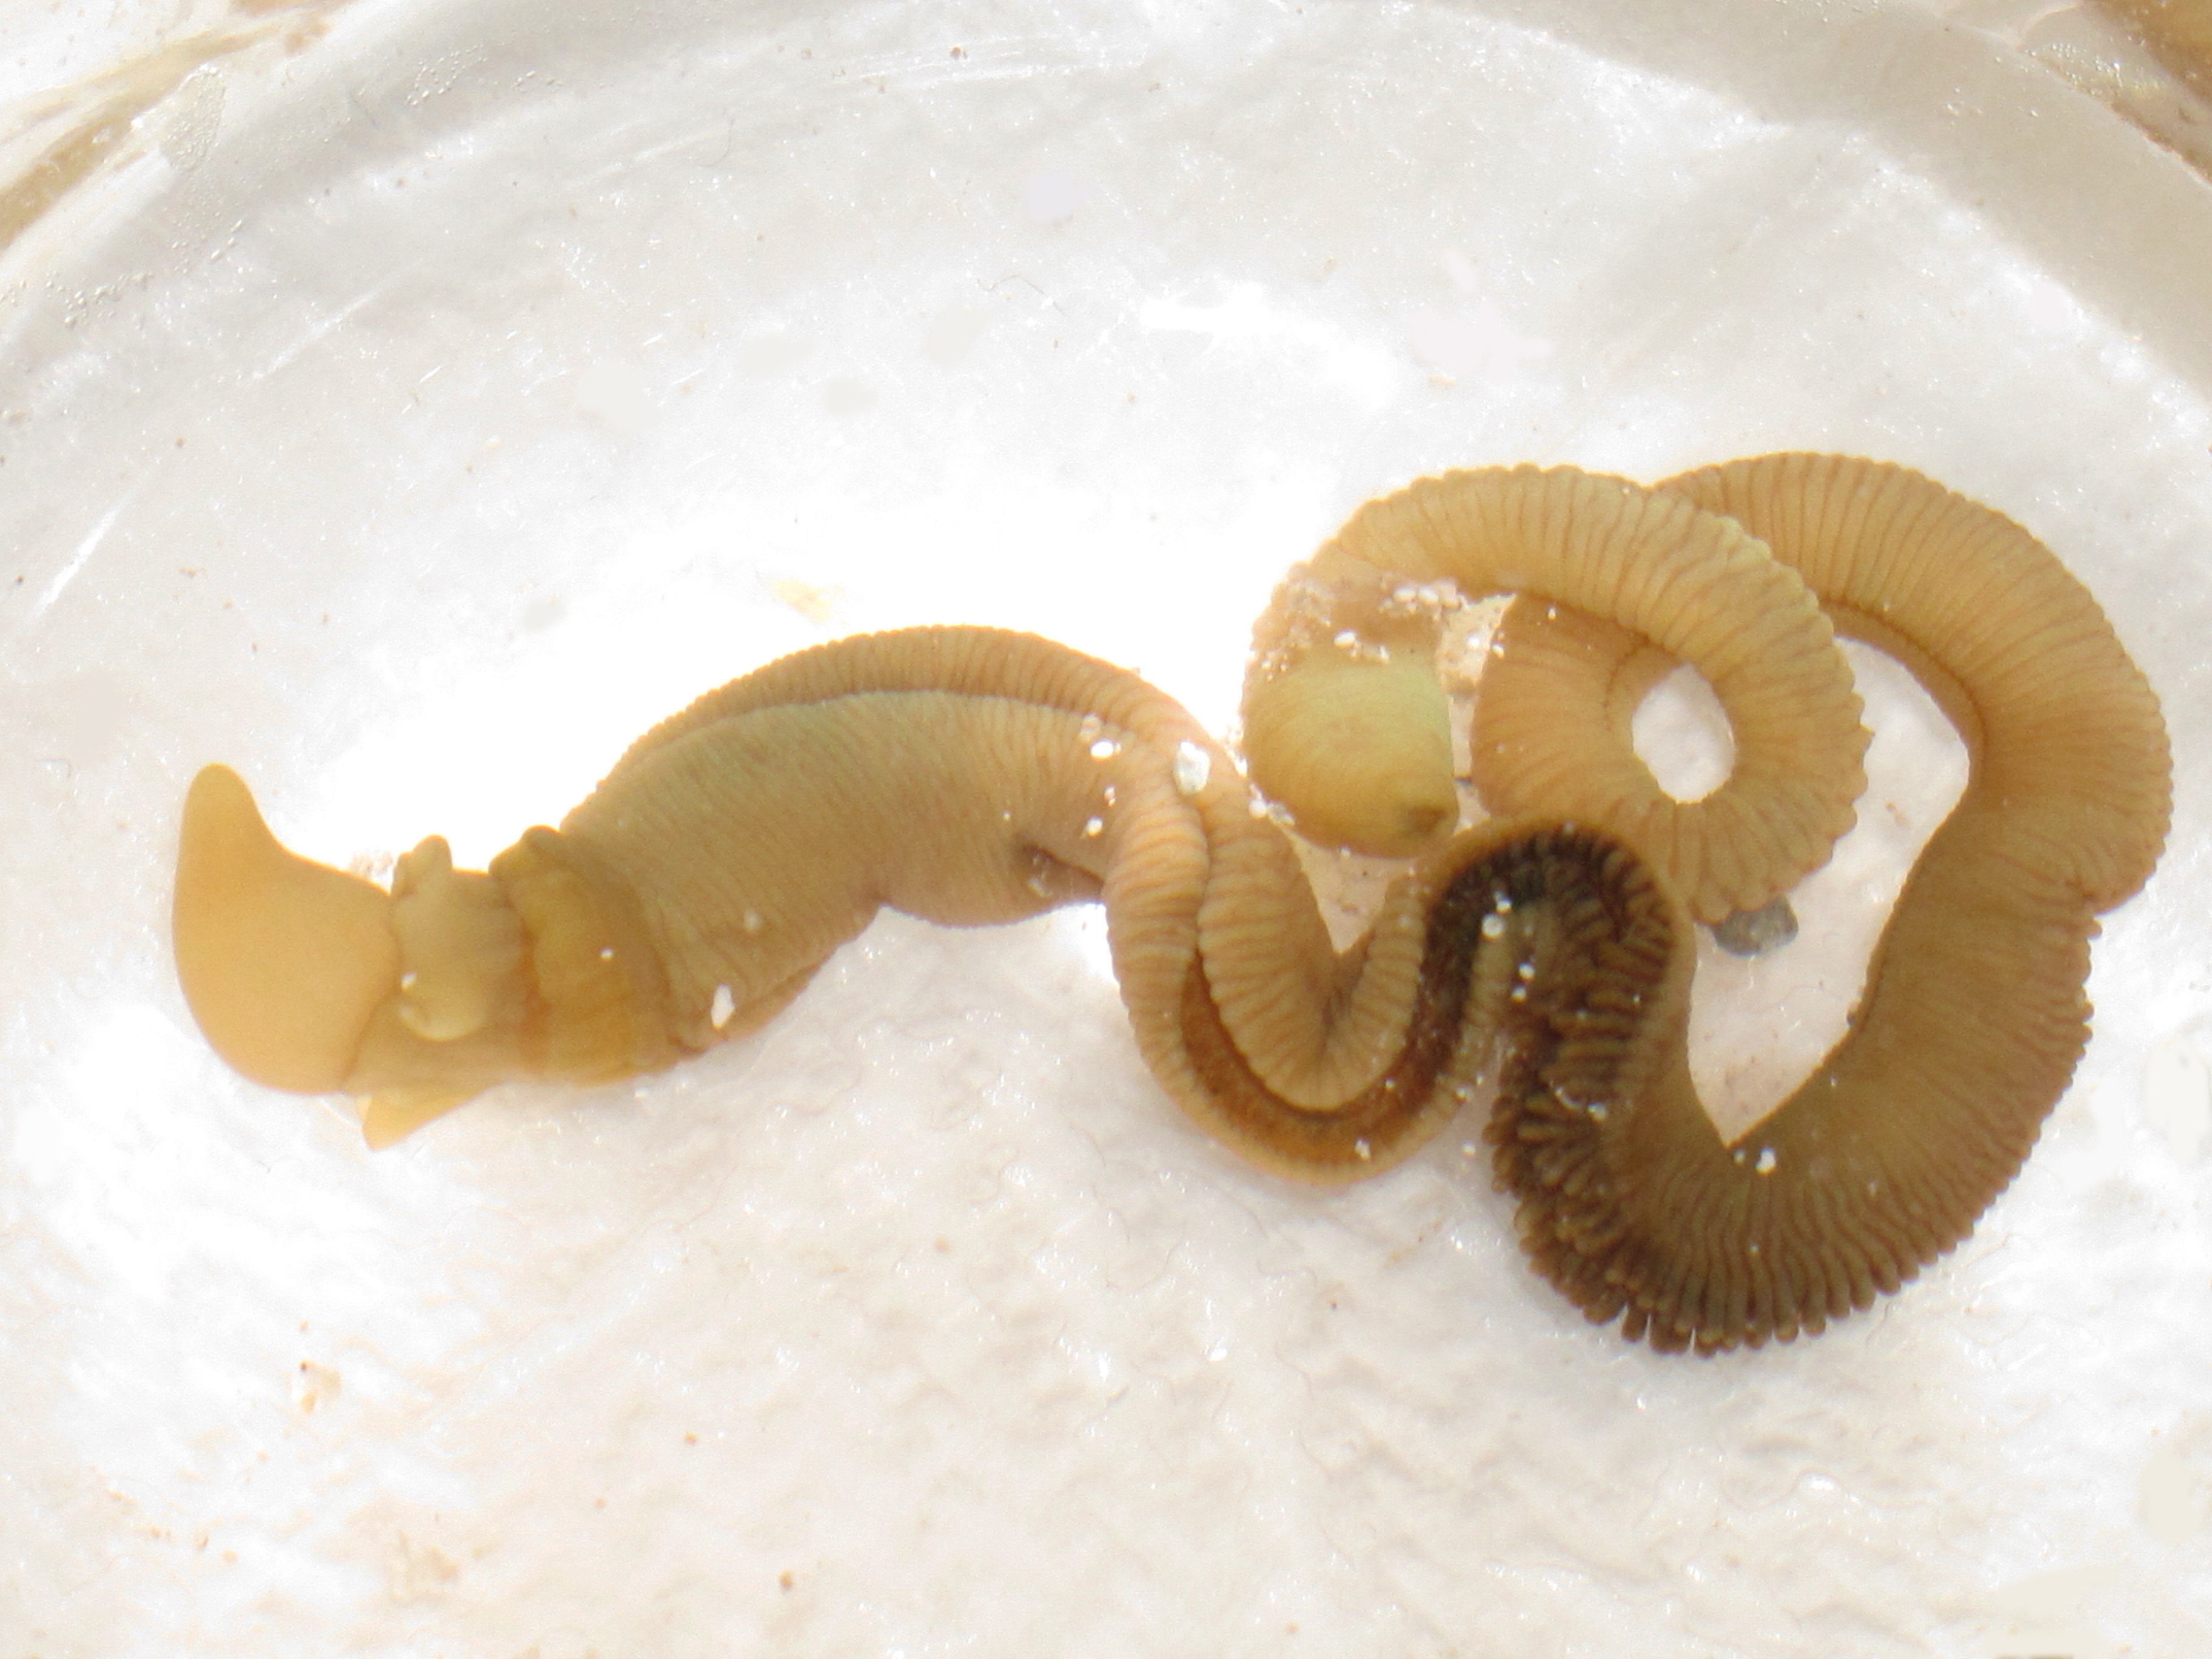 Un gusano bellota intacto y vivo. La cabeza está en el extremo izquierdo, y el gusano se cortará por el centro. Imagen: Shawn Luttrell. Fuente: Universidad de Washington.